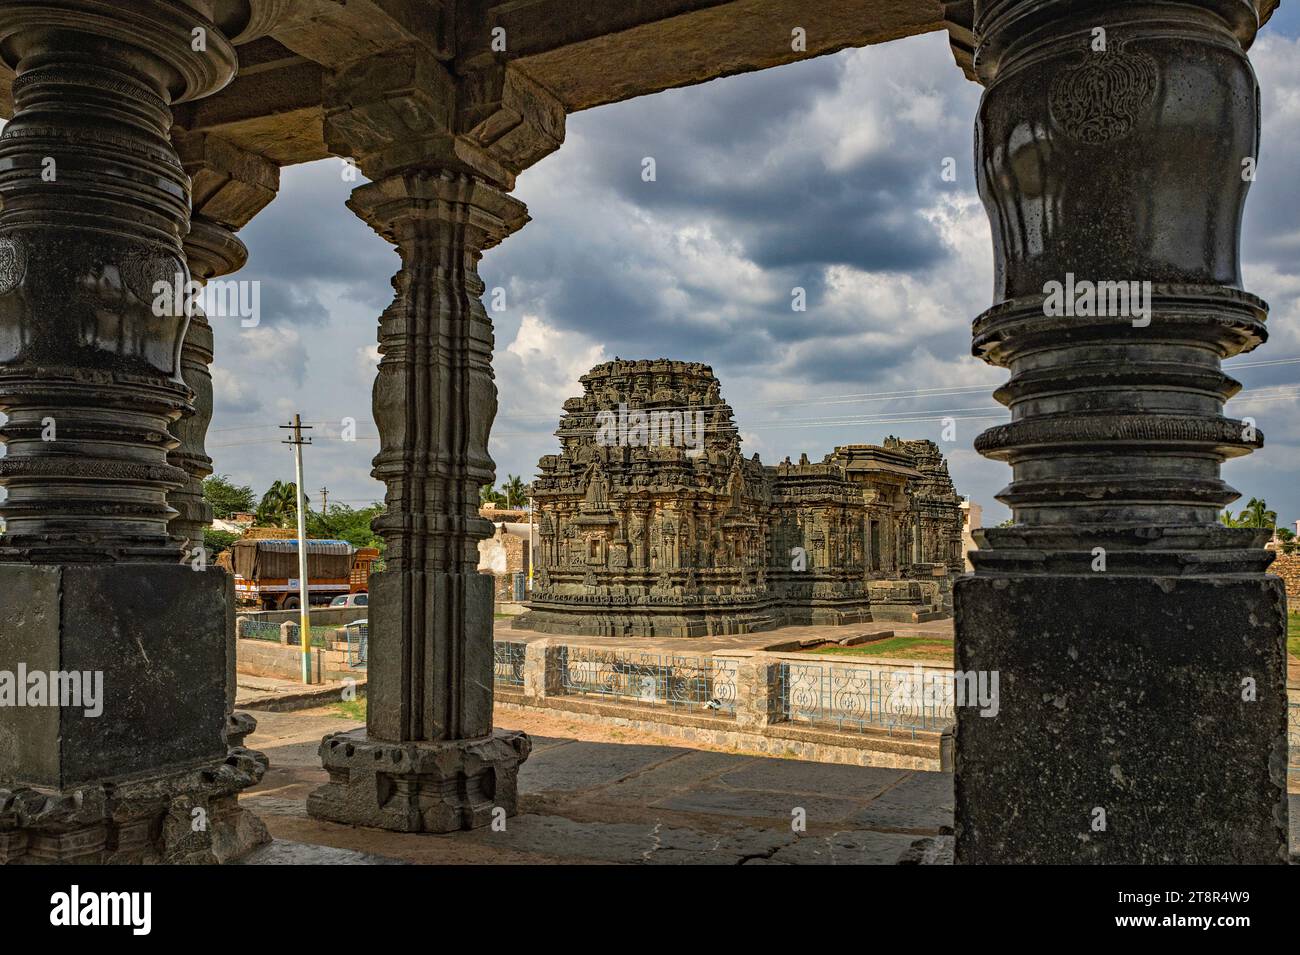 06 05 2015 Vintage Old Heritage Art Kashivishvanatha Temple, Lakkundi in Gadag District of Karnataka.India Asia. Stock Photo